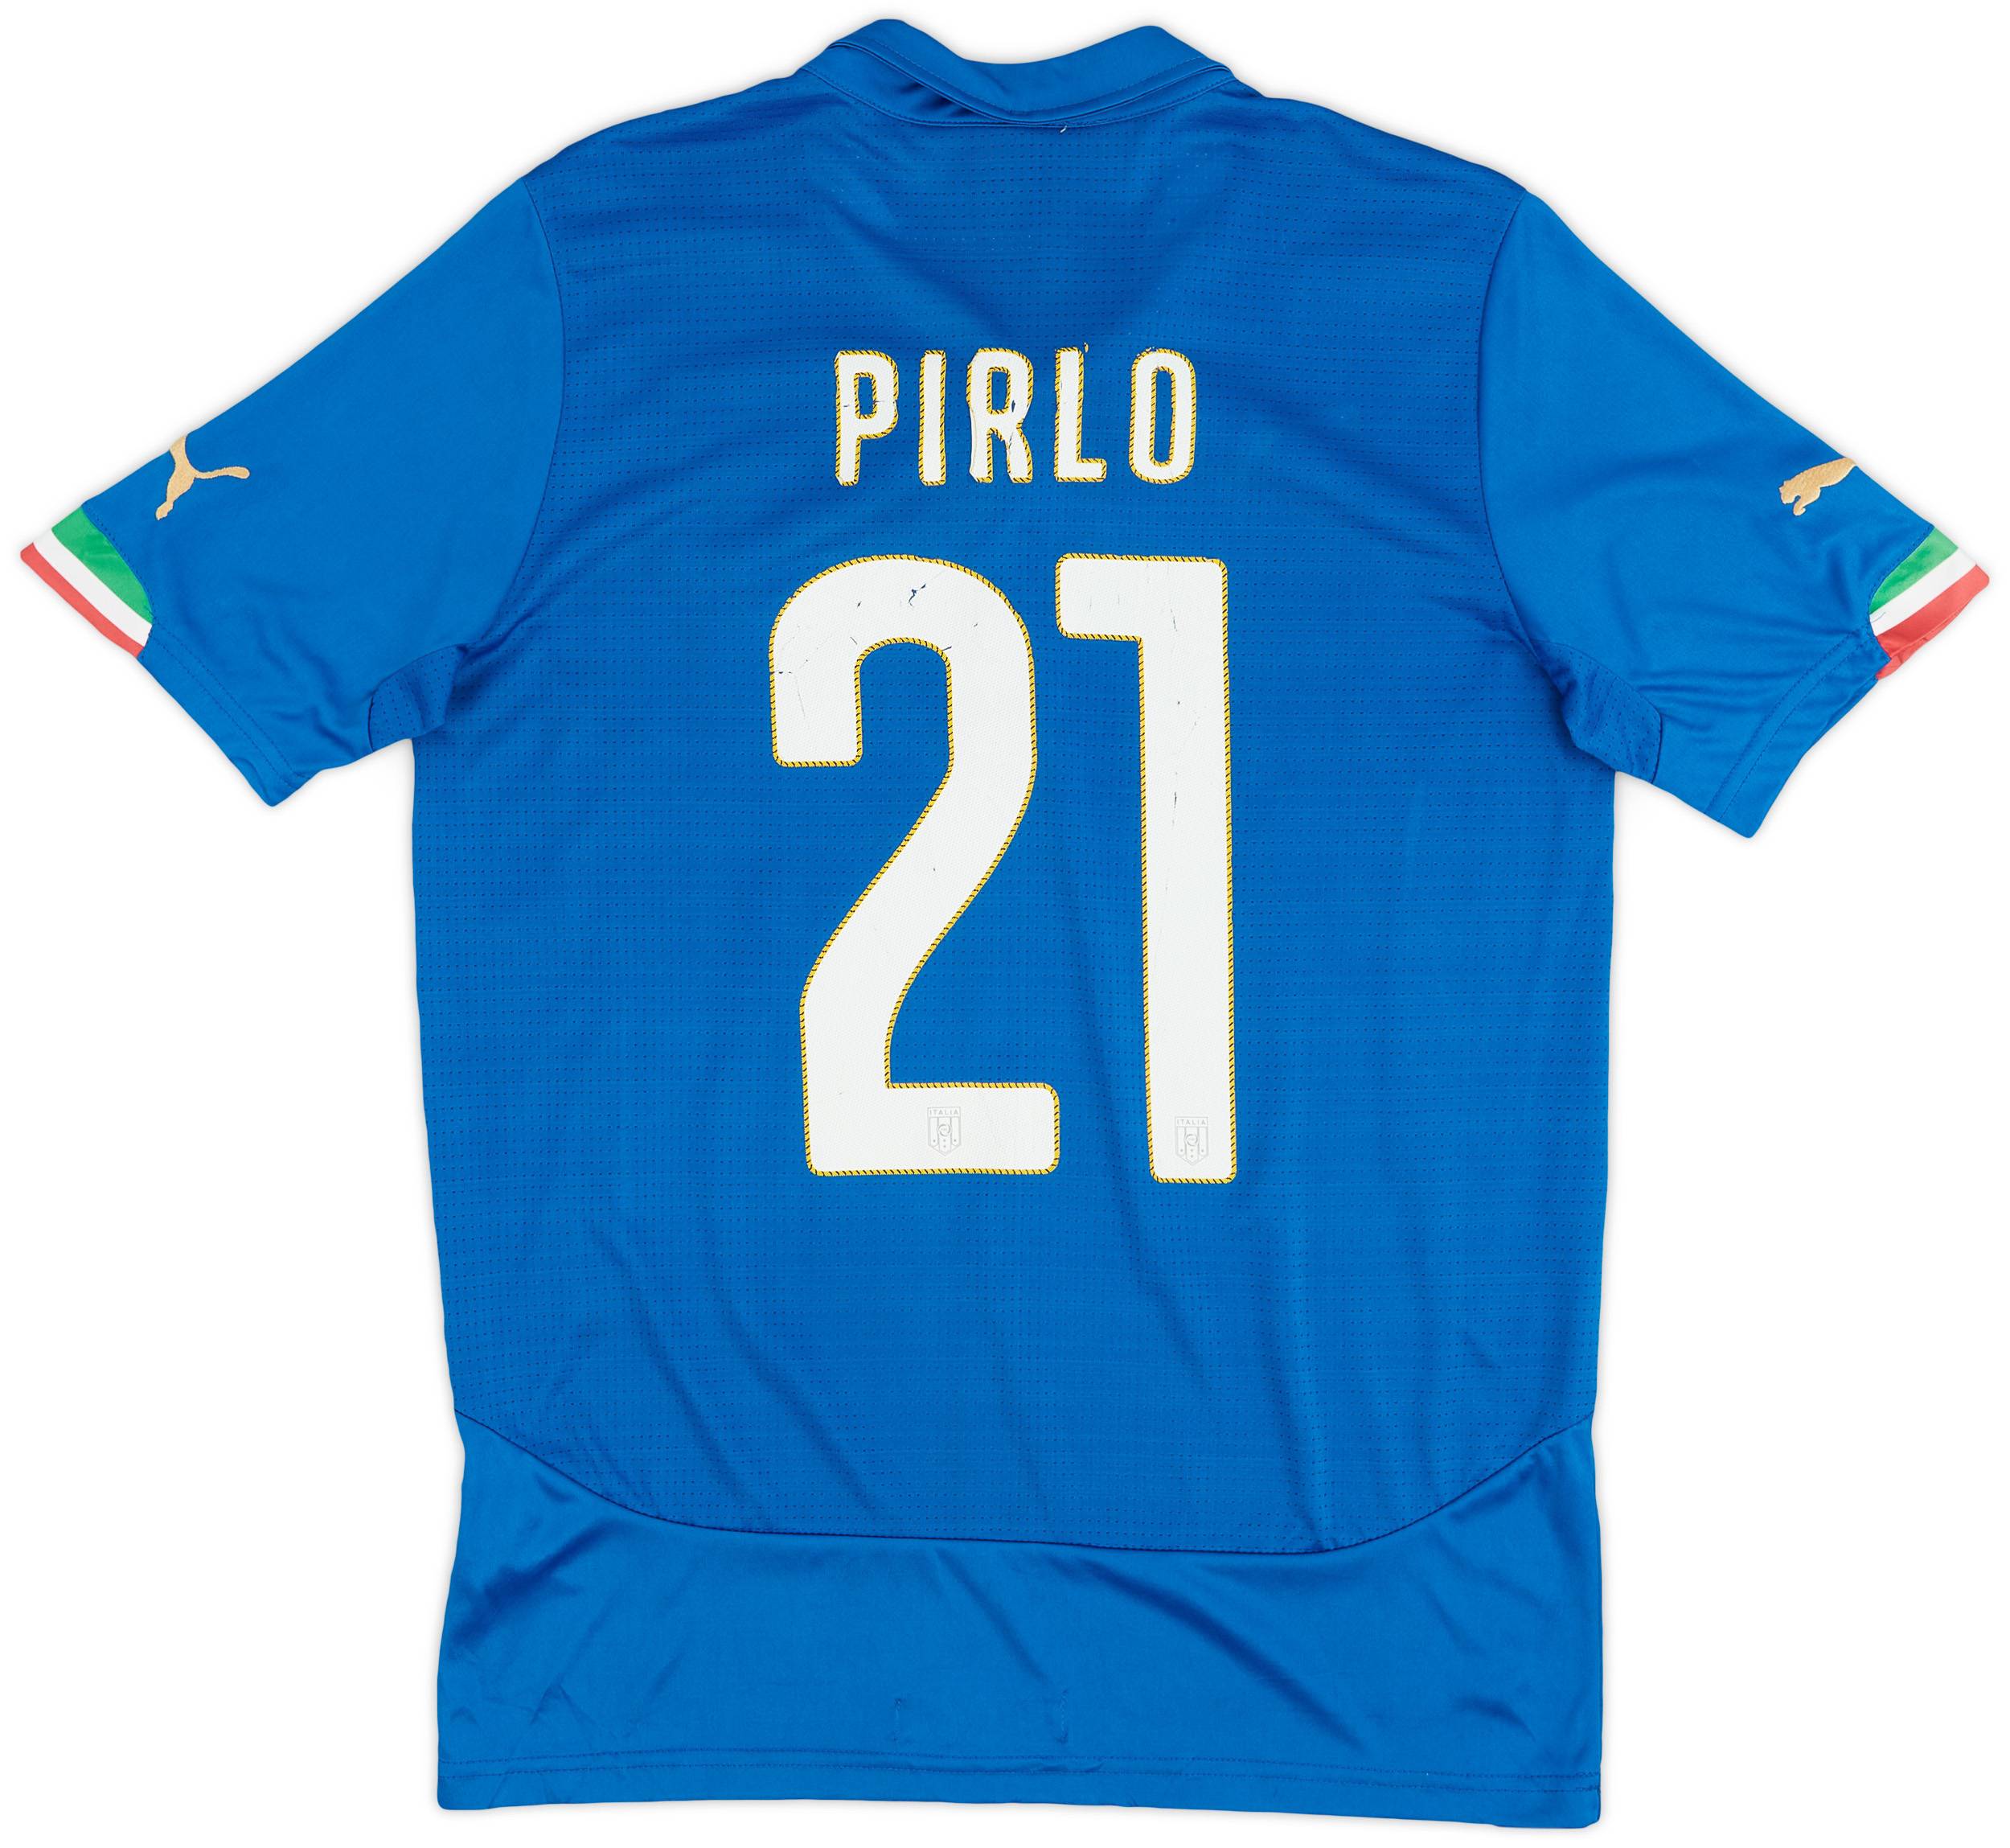 2014-15 Italy Home Shirt Pirlo #21 - 6/10 - (S)